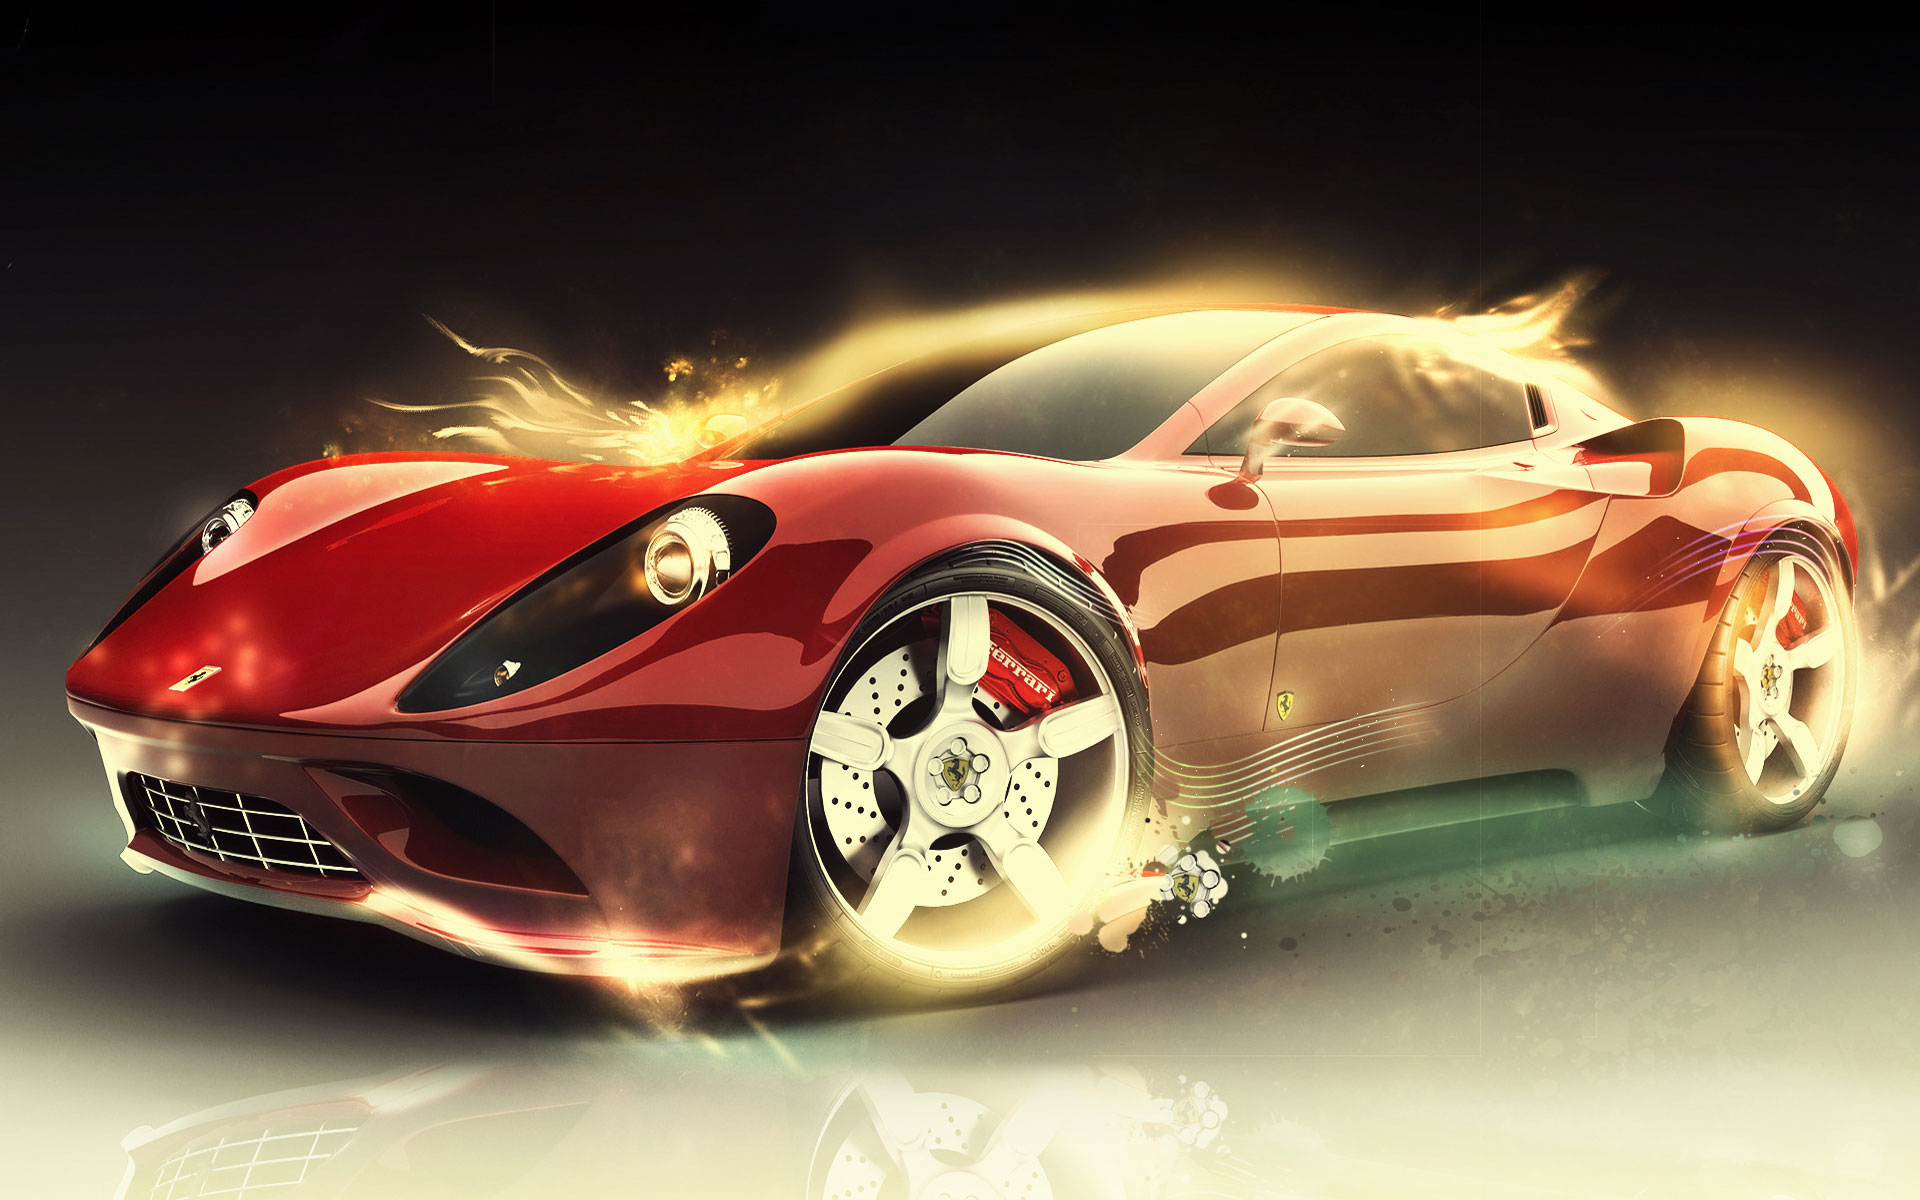 Cool Ferrari Cars Wallpapers Wallpapers